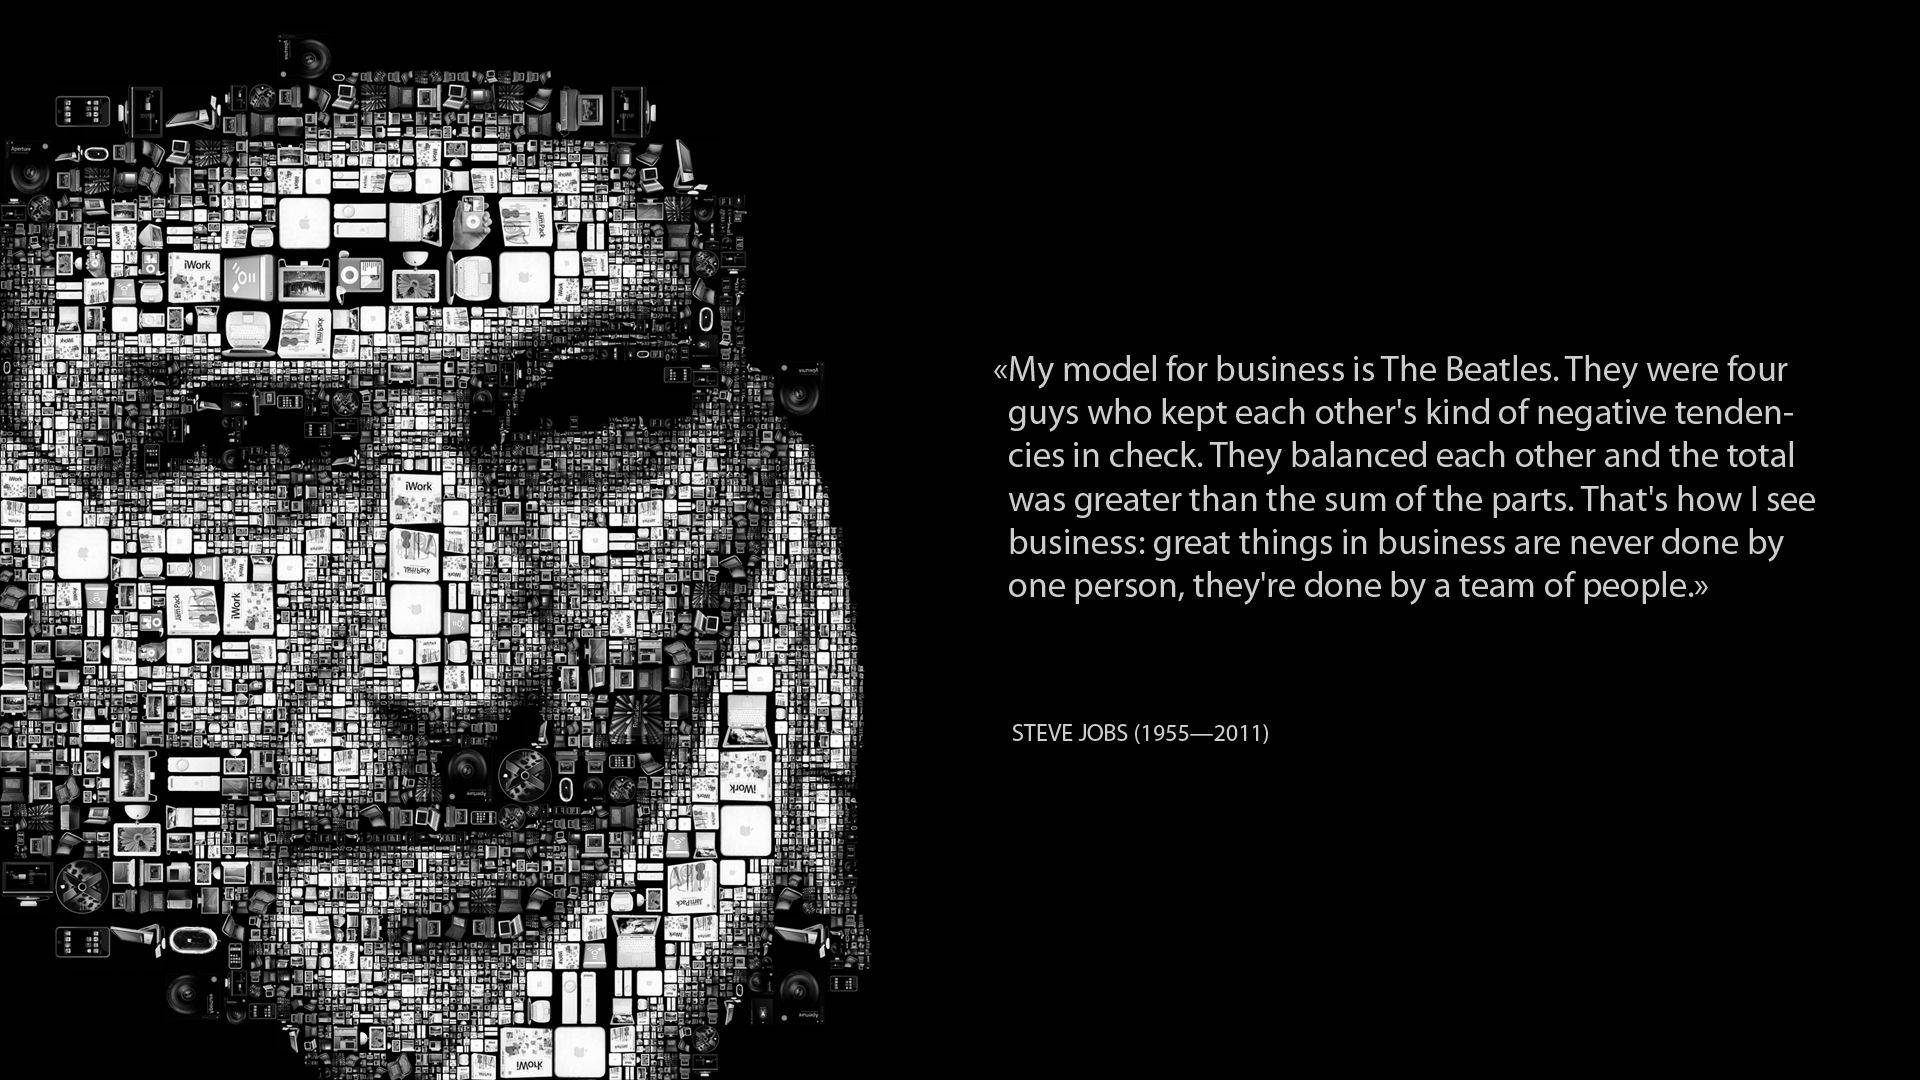 Steve Jobs Mosaic Inspirational Wallpaper